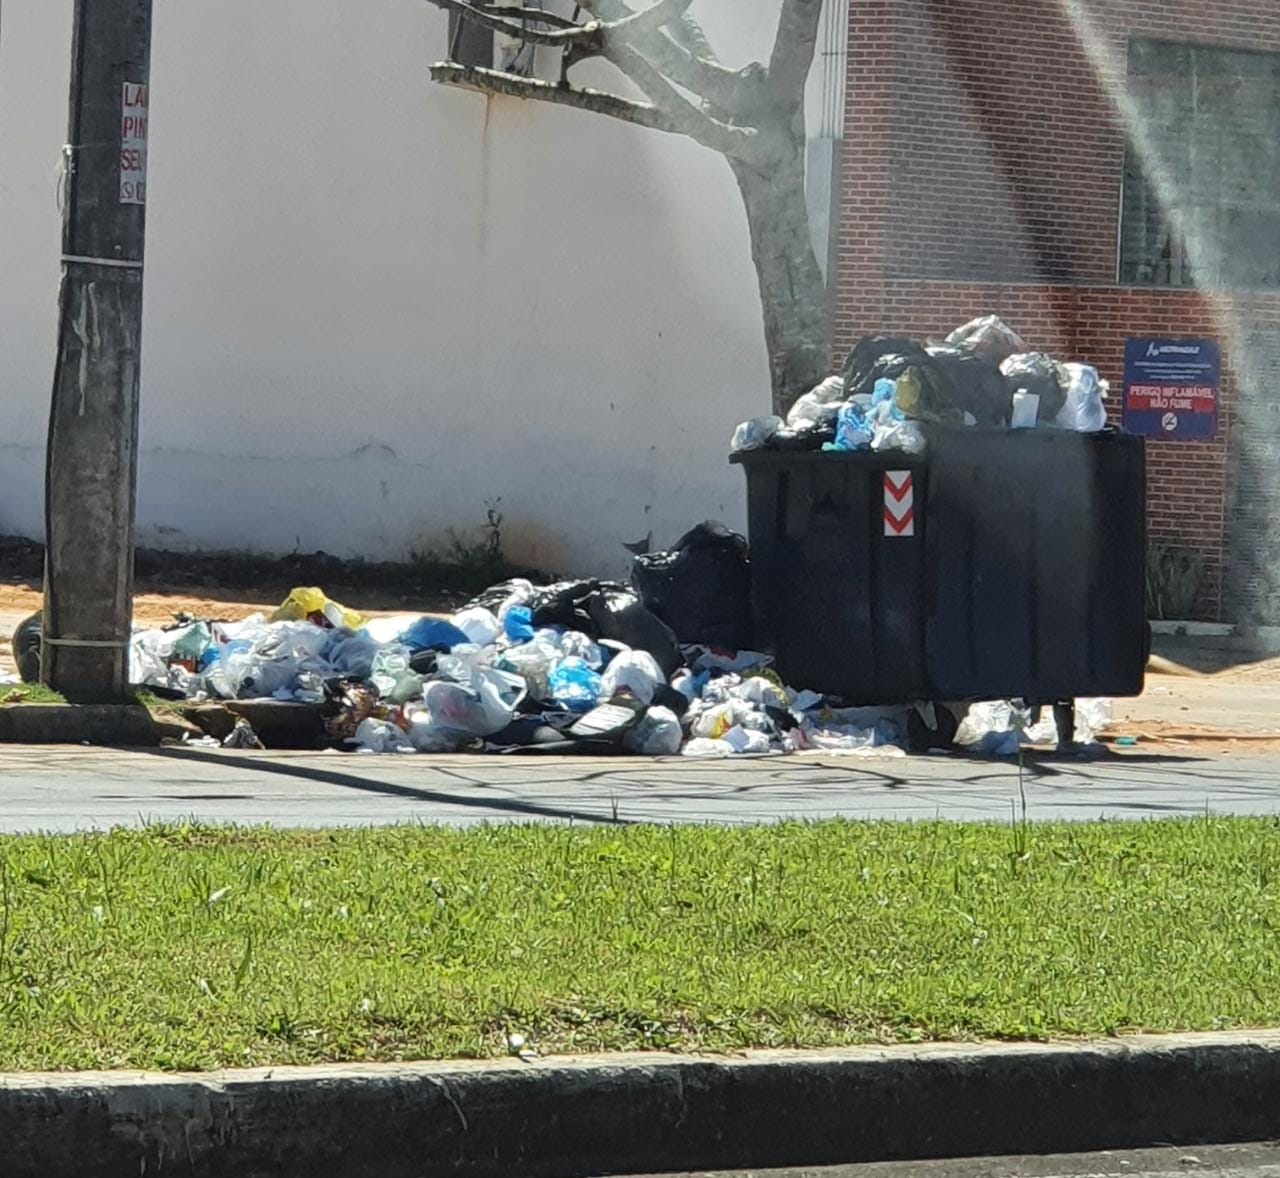 Centro das investigações na política, lixo se acumula nas ruas de Cachoeirinha